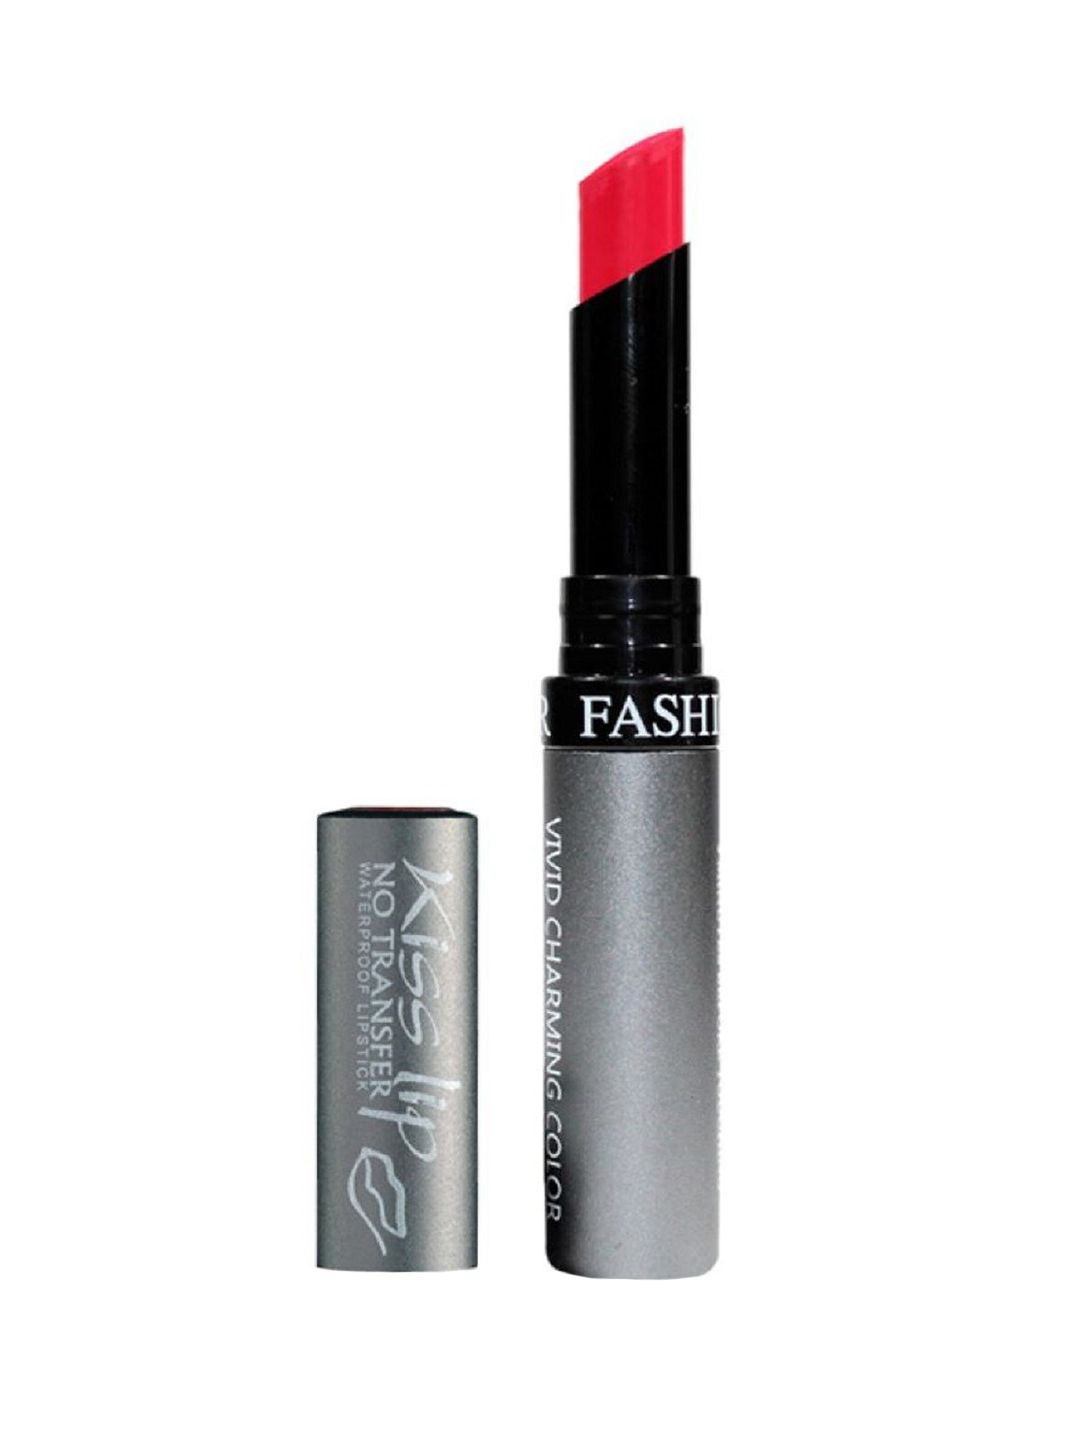 Fashion Colour Kiss Lip Vivid Charming Color No Transfer Lipstick - Rose Mauve 61 Price in India